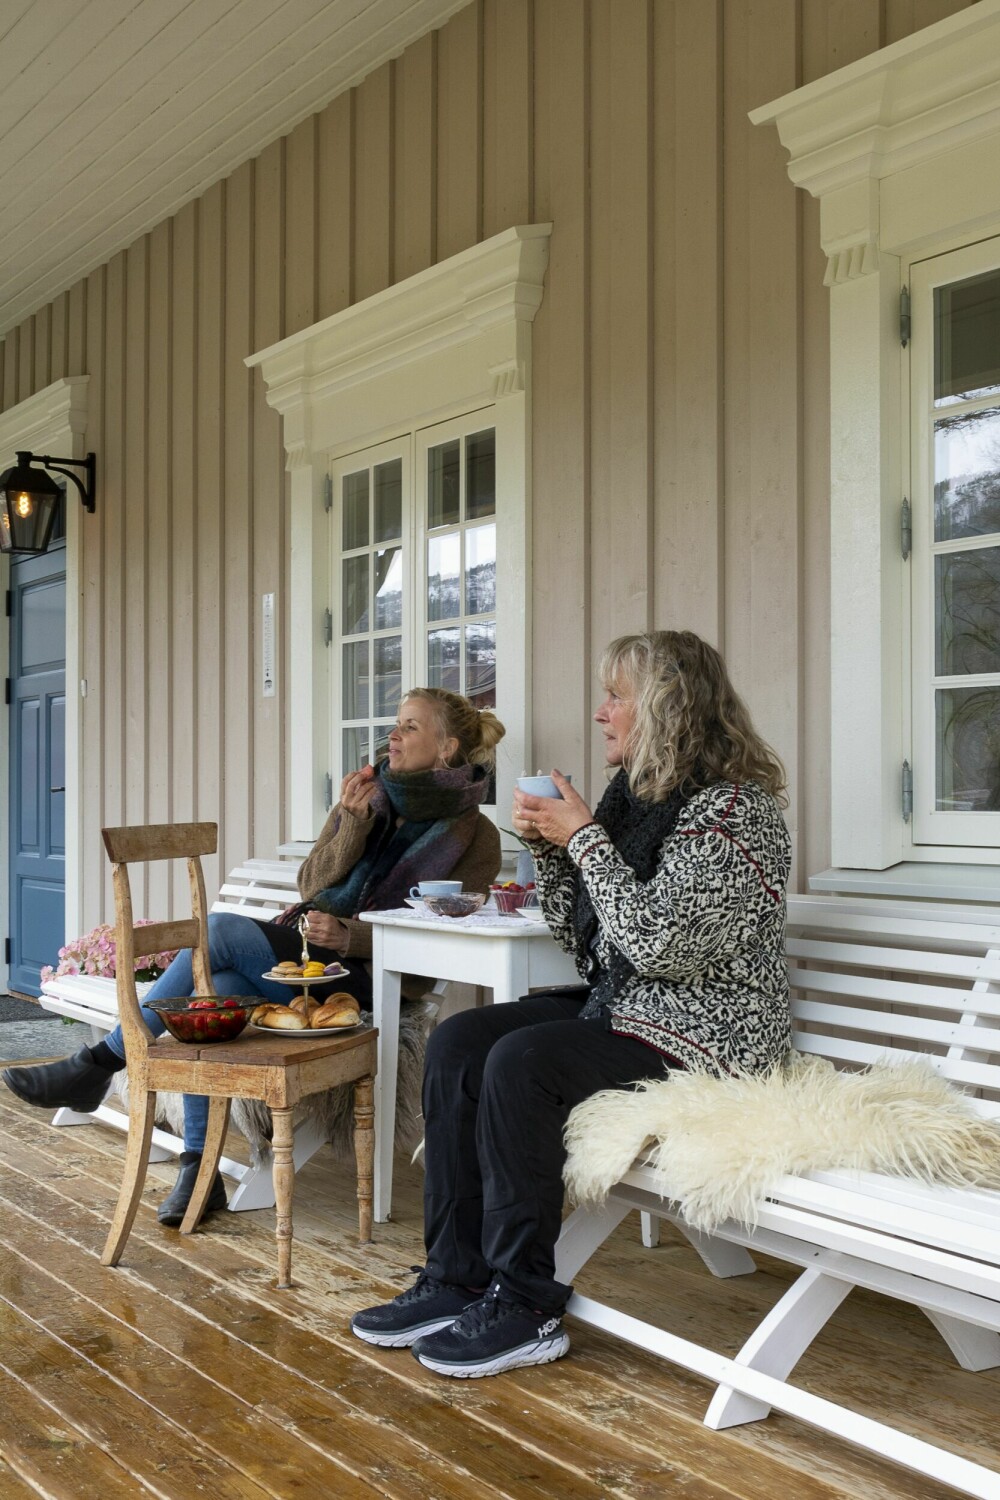 Bodil og moren tar seg gjerne en kopp te eller kaffe på verandaen når været byr seg, og når det ikke byr seg. Engelskverandaen er fin slik – med tak over begge inngangsdørene og benker i midten.